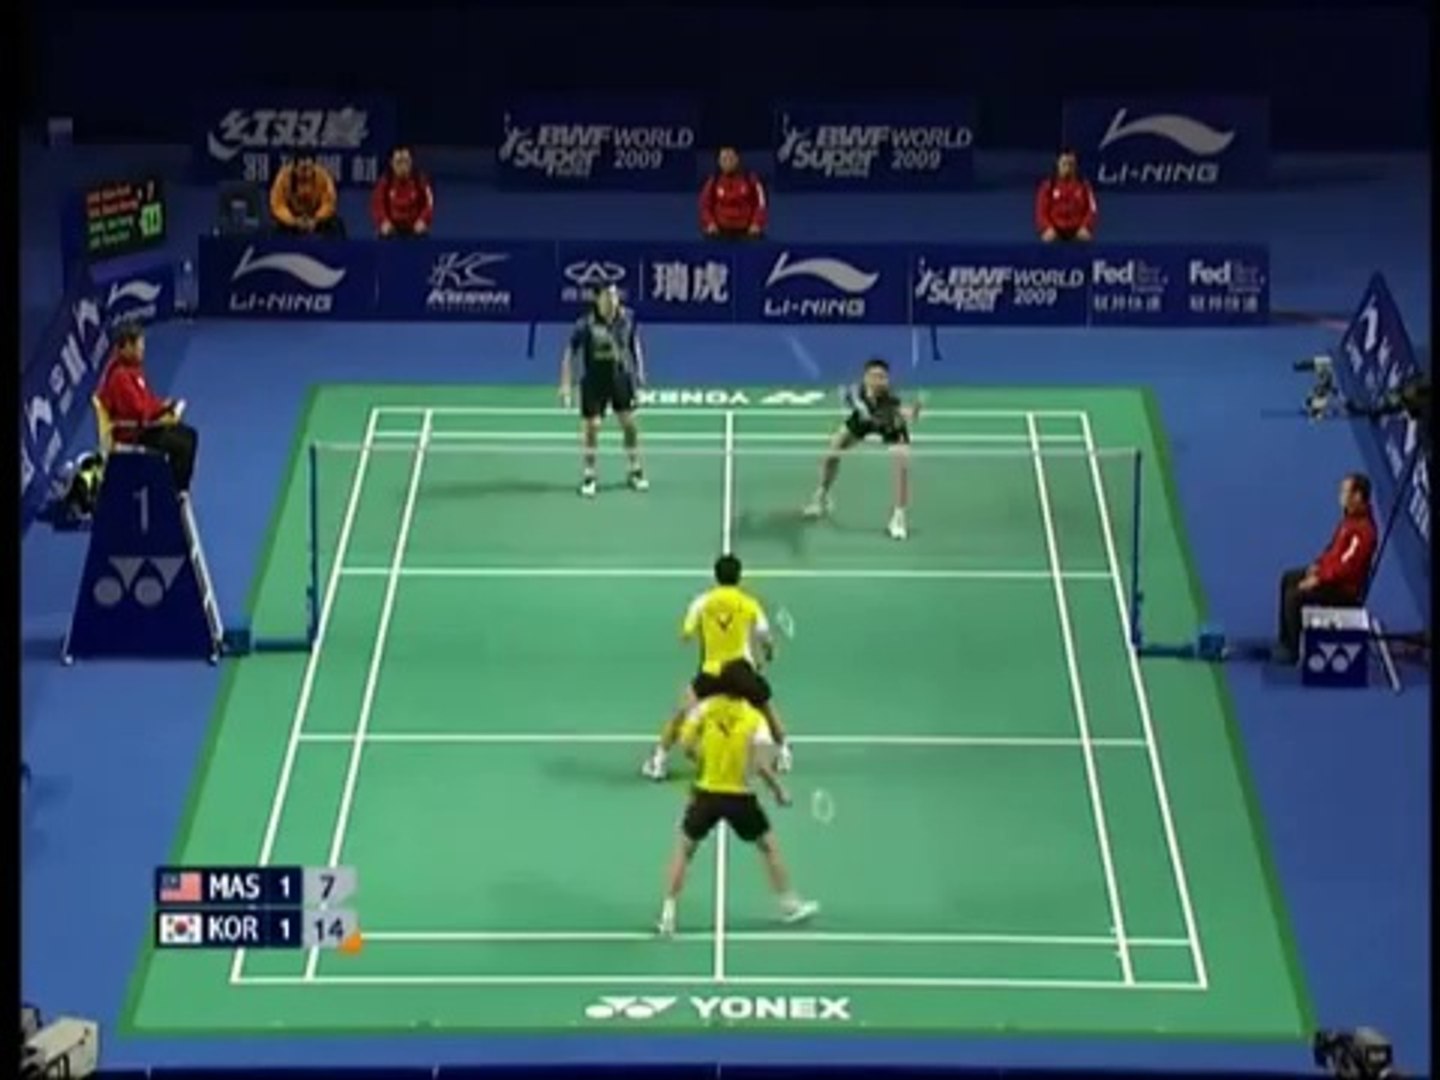 ⁣[Highlights] Badminton KOO Kien Keat Tan Boon Heong vs Lee Yong Dae CHUNG Jae Sung 2009 China [3...